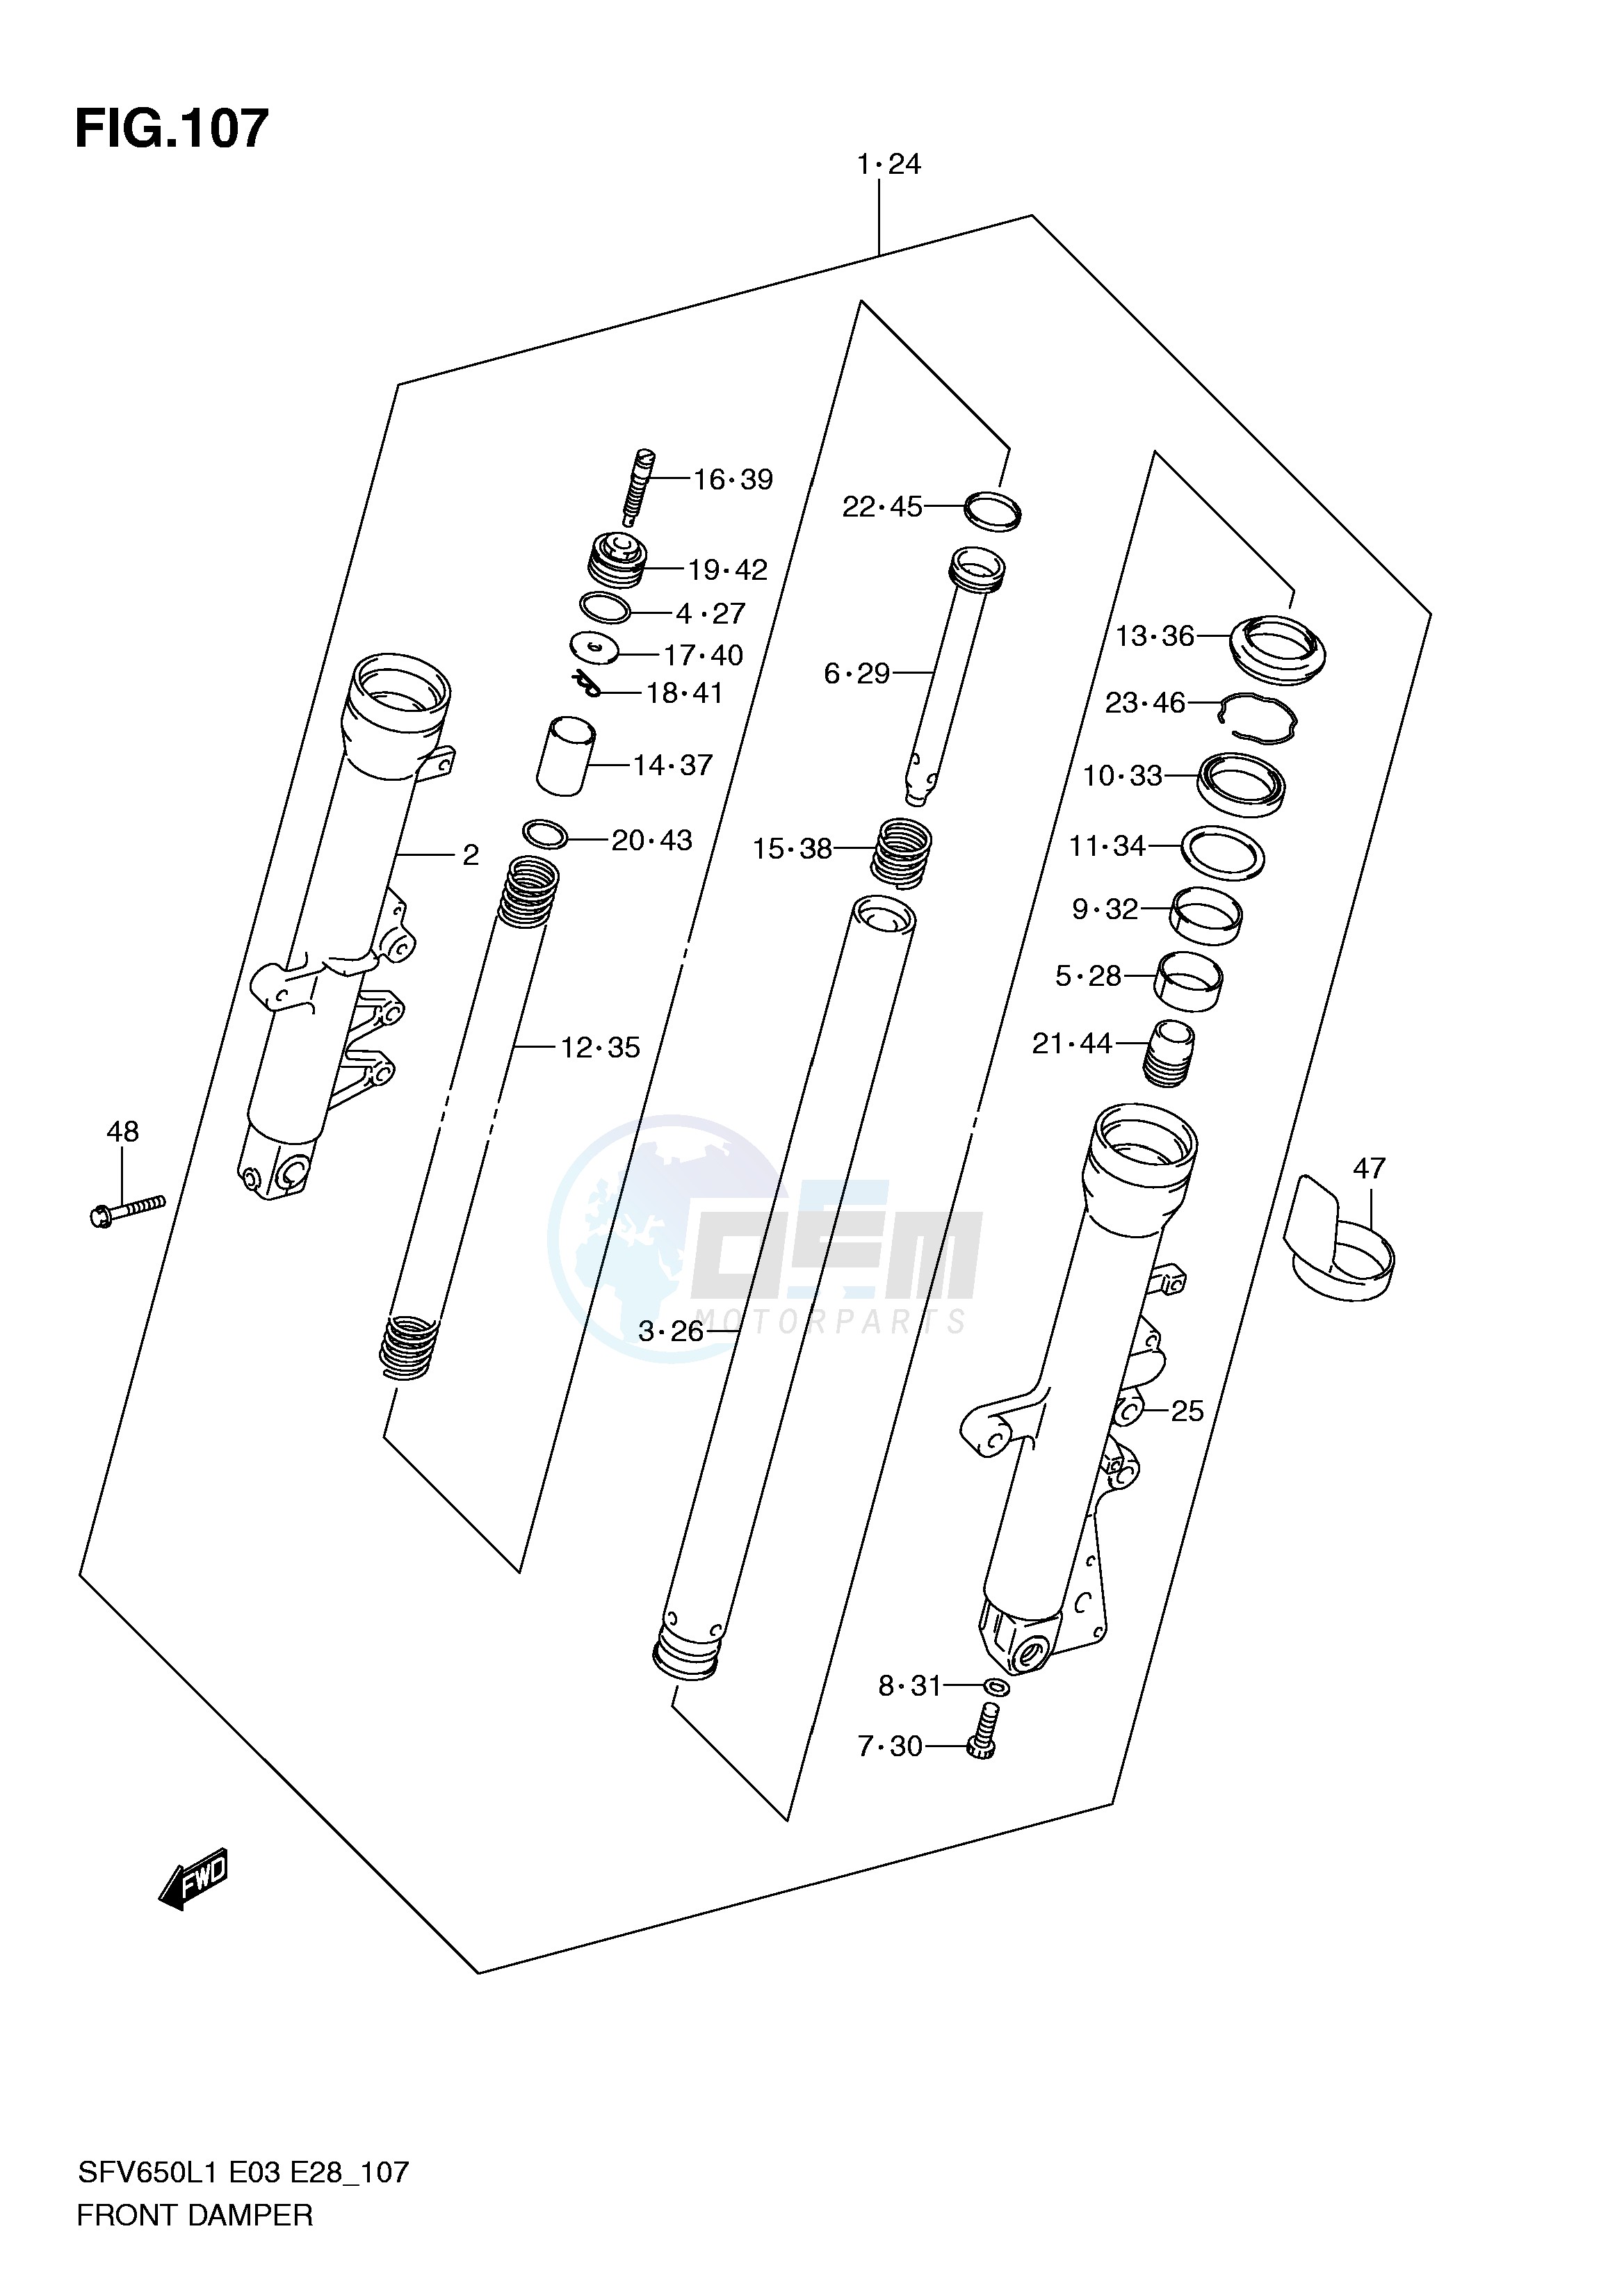 FRONT DAMPER (SFV650AL1 E33) blueprint